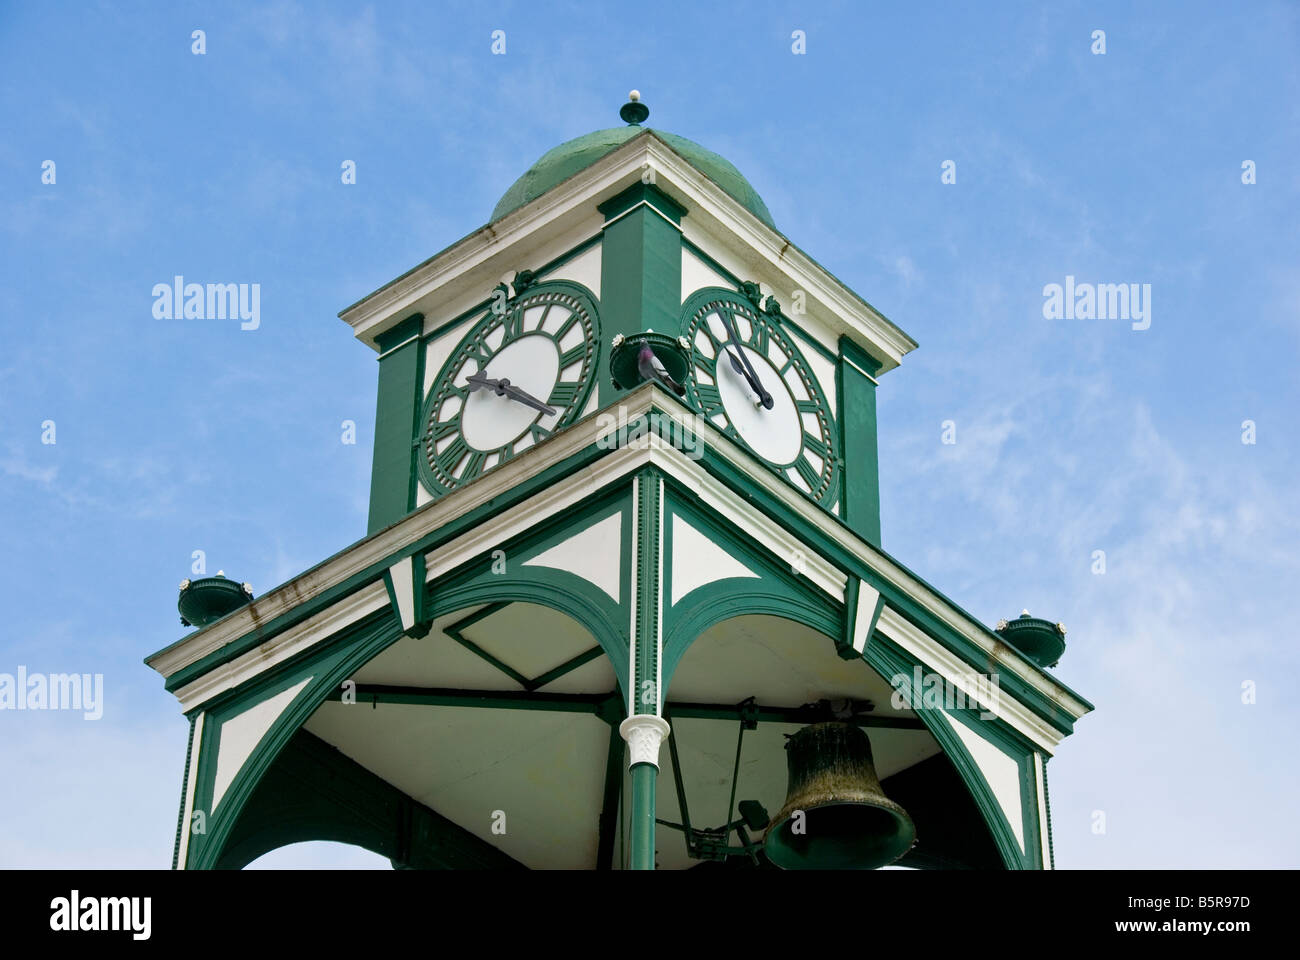 Belize City tourist attraction monument Édifice de la Cour suprême avec tour de l'horloge dôme attraction touristique monument historique Banque D'Images